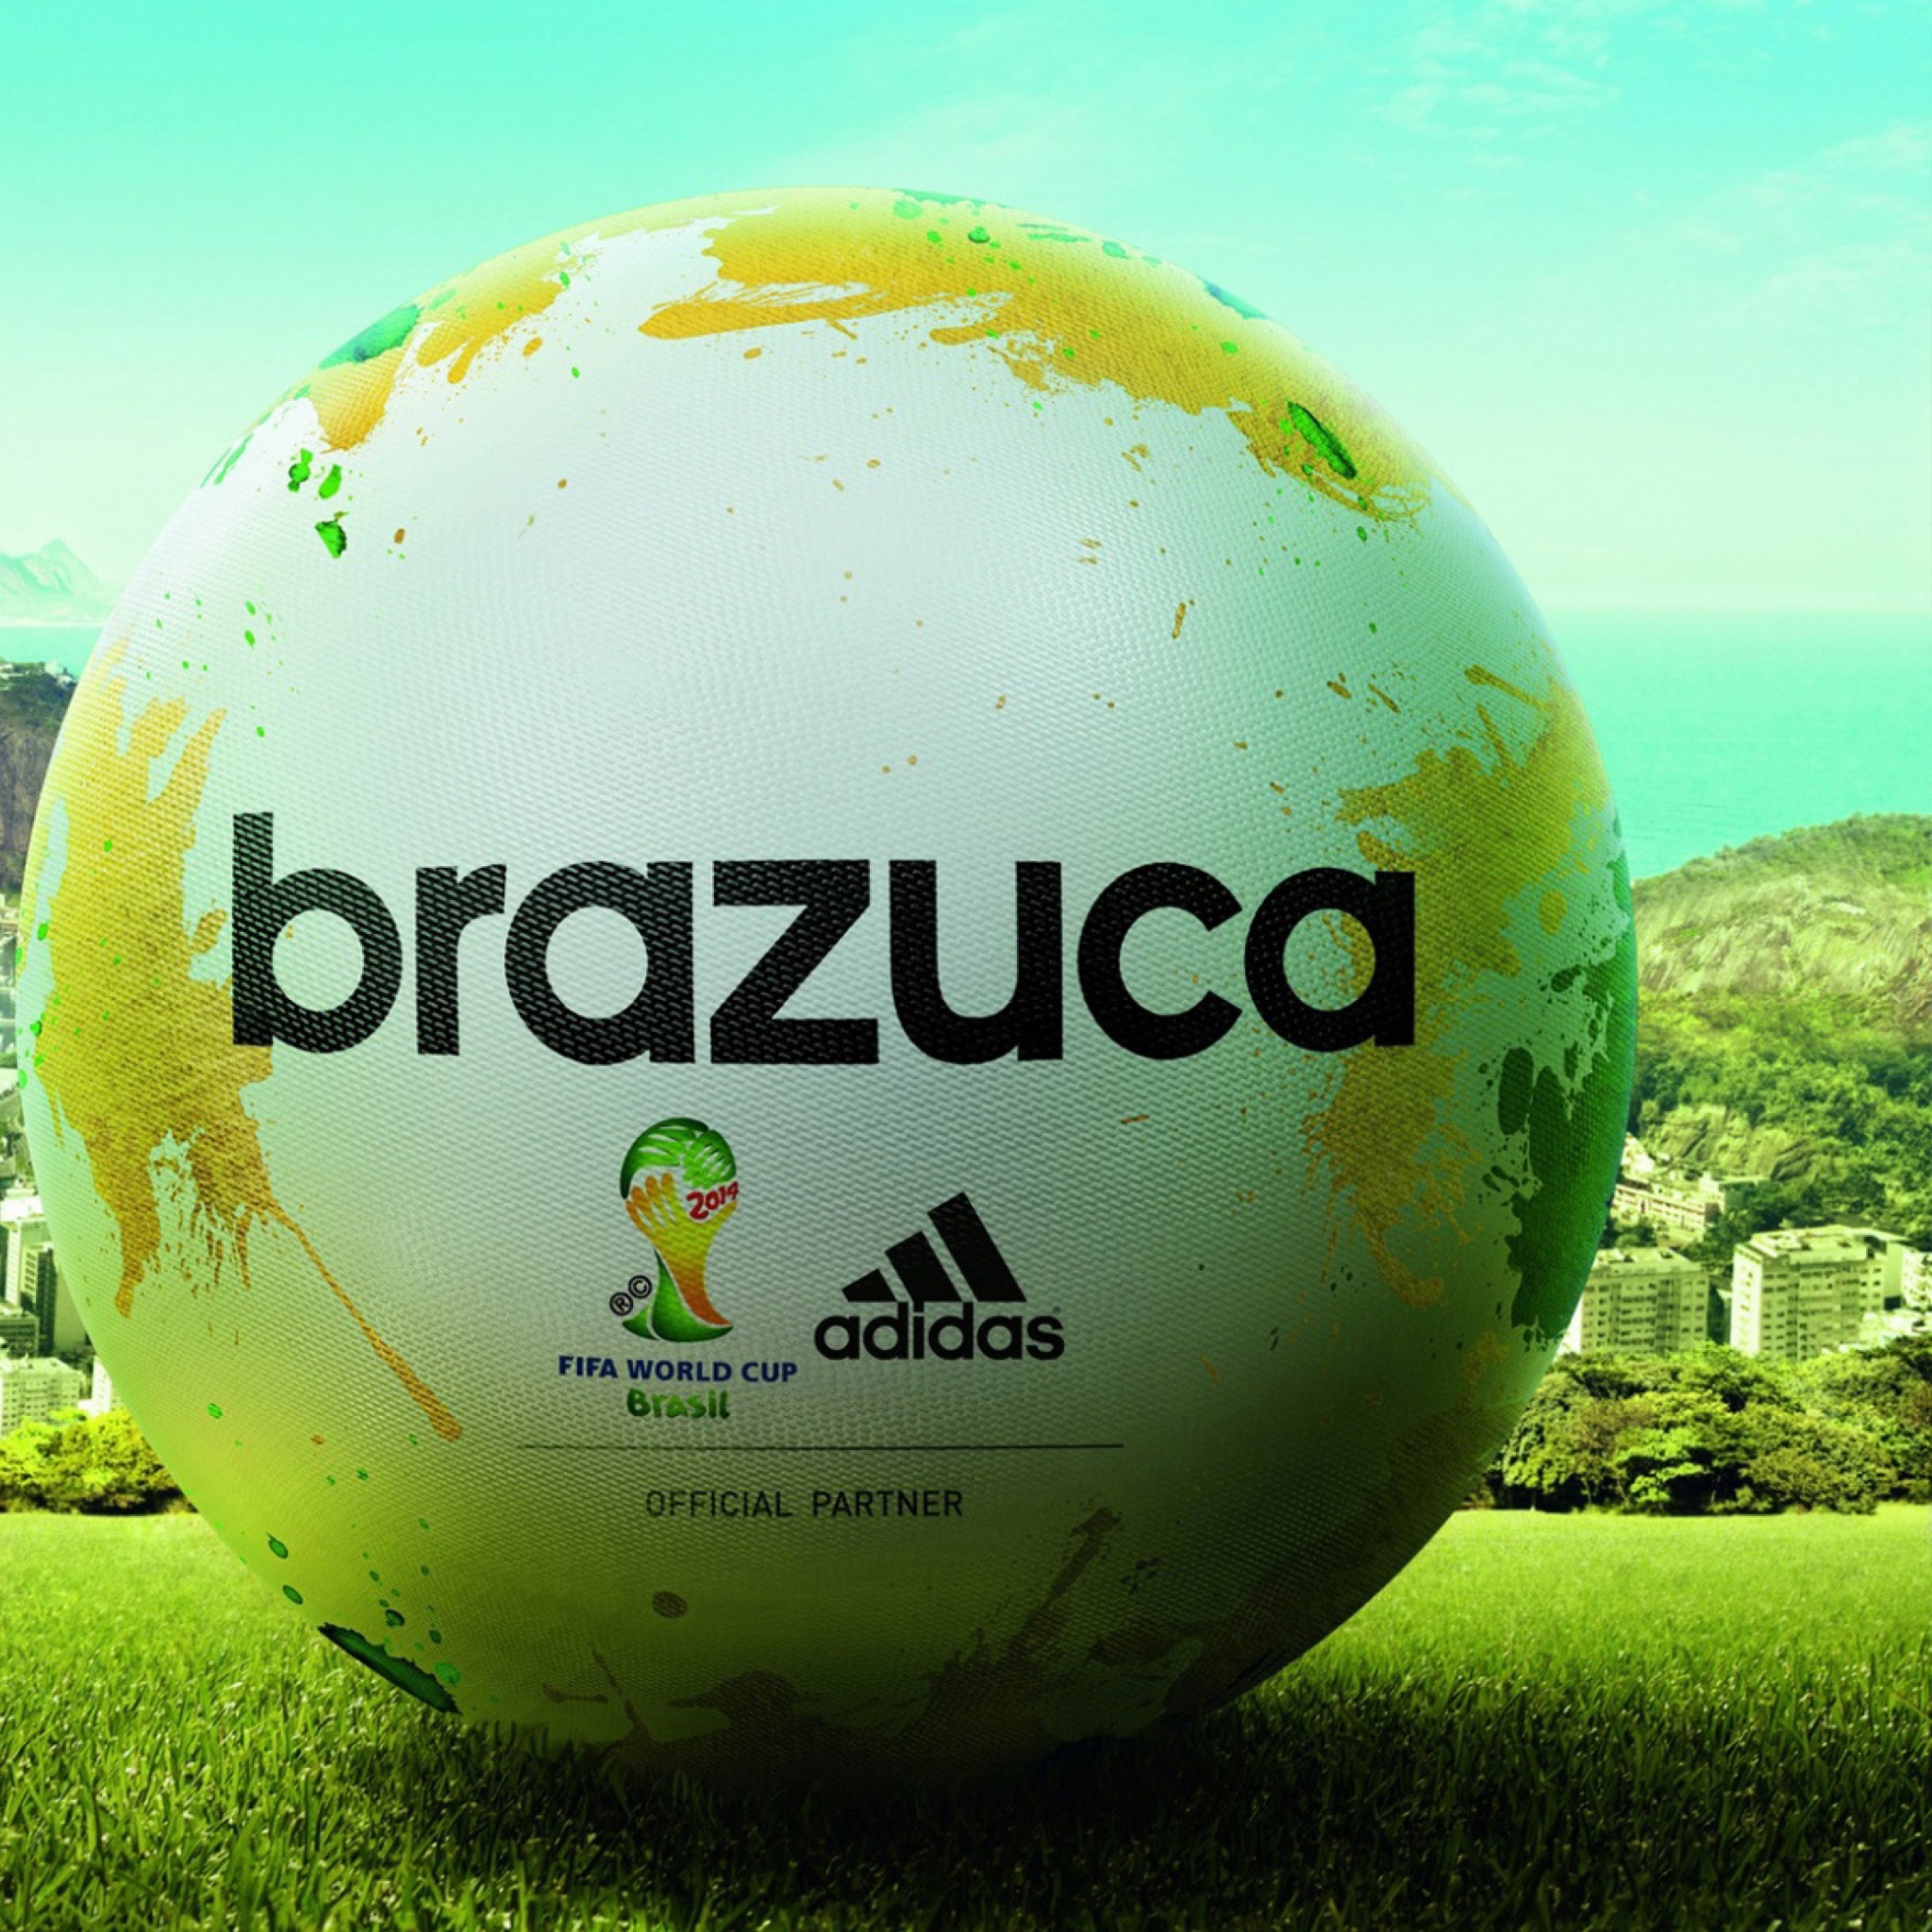 Das Adidas Brazuca Match Ball FIFA World Cup 2014 Wallpaper 2048x2048